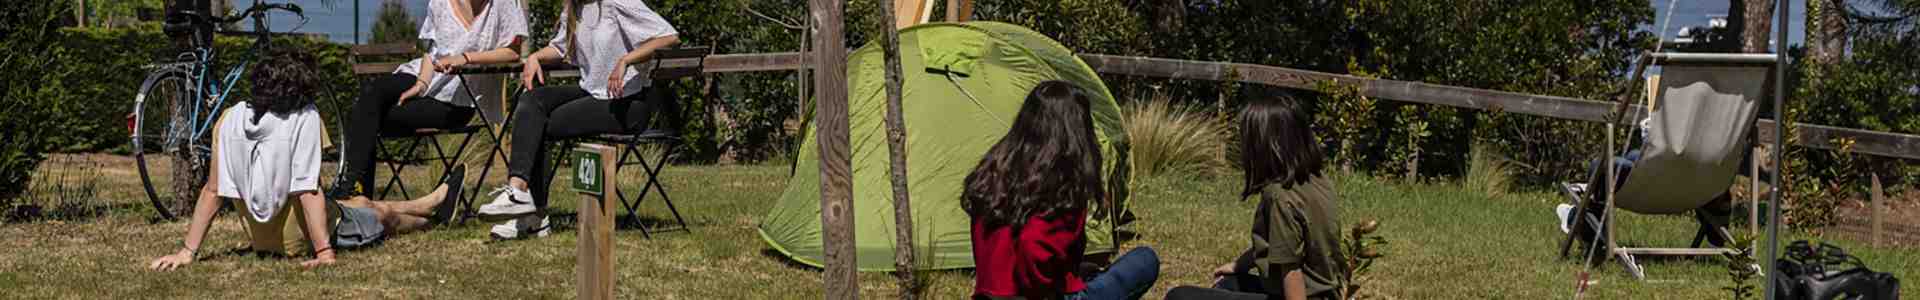 Où pouvez-vous planter votre tente?